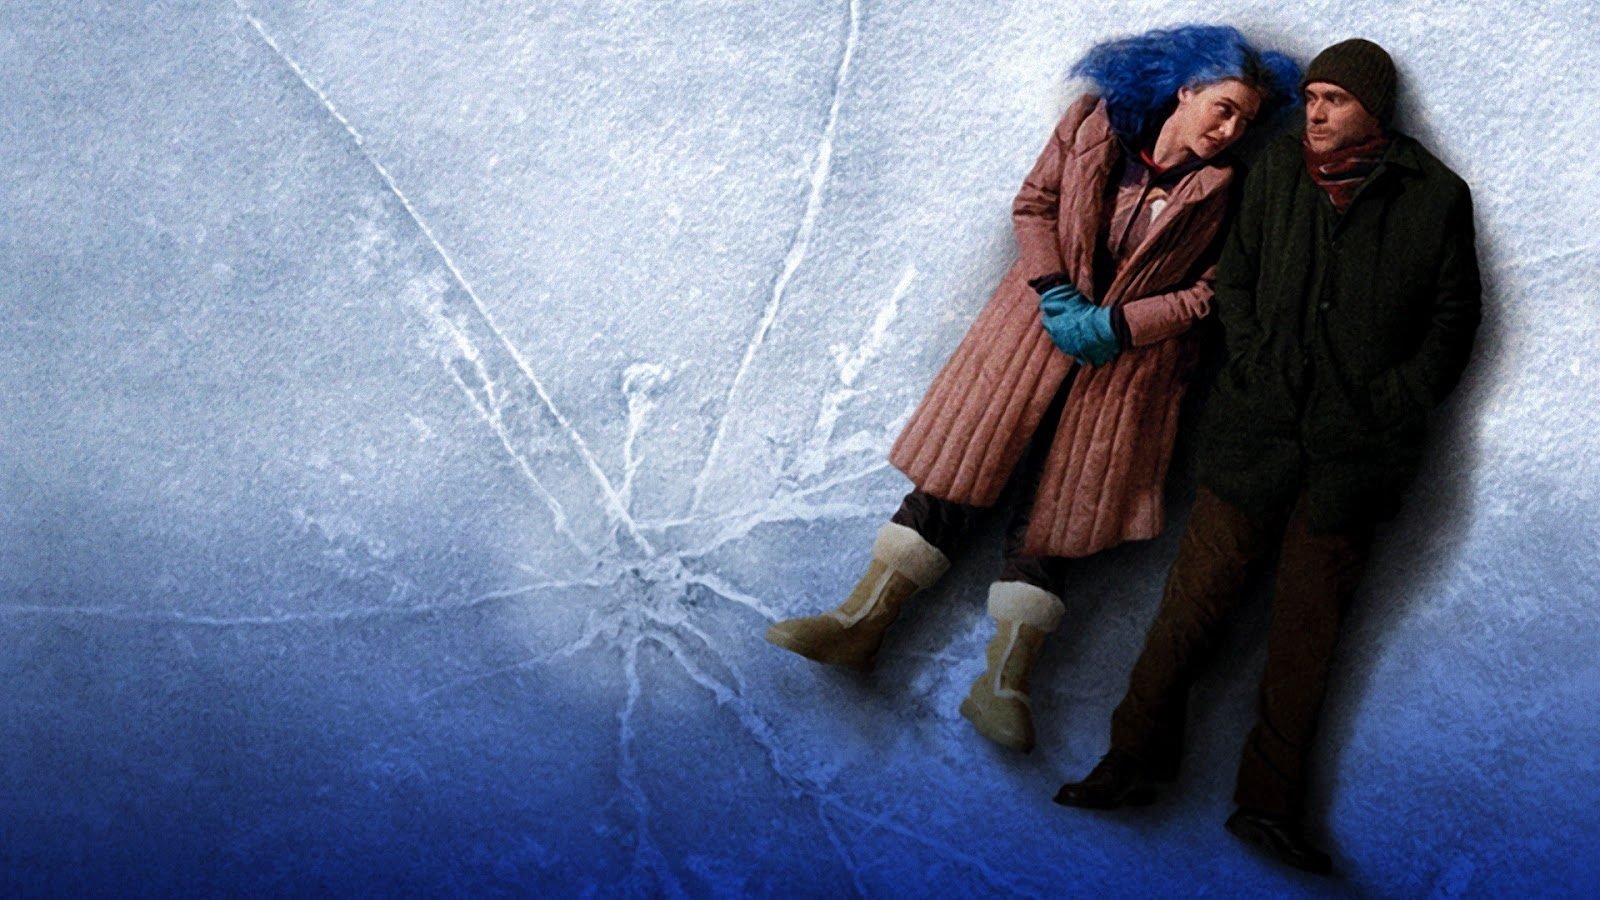 Sonbaharda İzlenecek 5 Romantik Film Tavsiyesi - Eternal Sunshine of the Spotless Mind